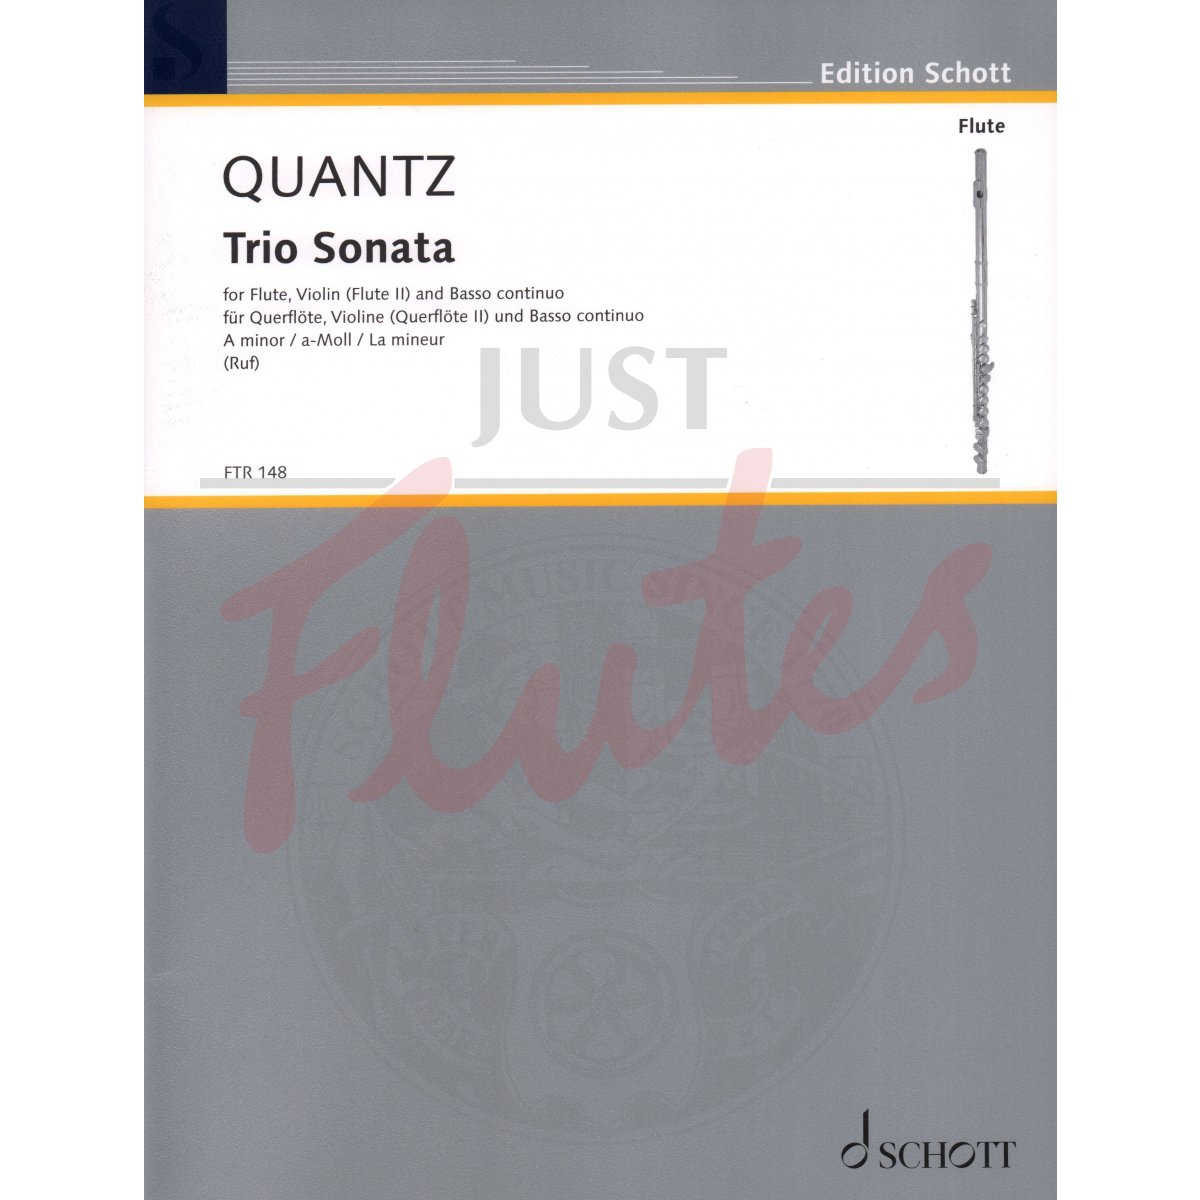 Trio Sonata in A minor for Flute, Violin (or Flute) and Basso Continuo